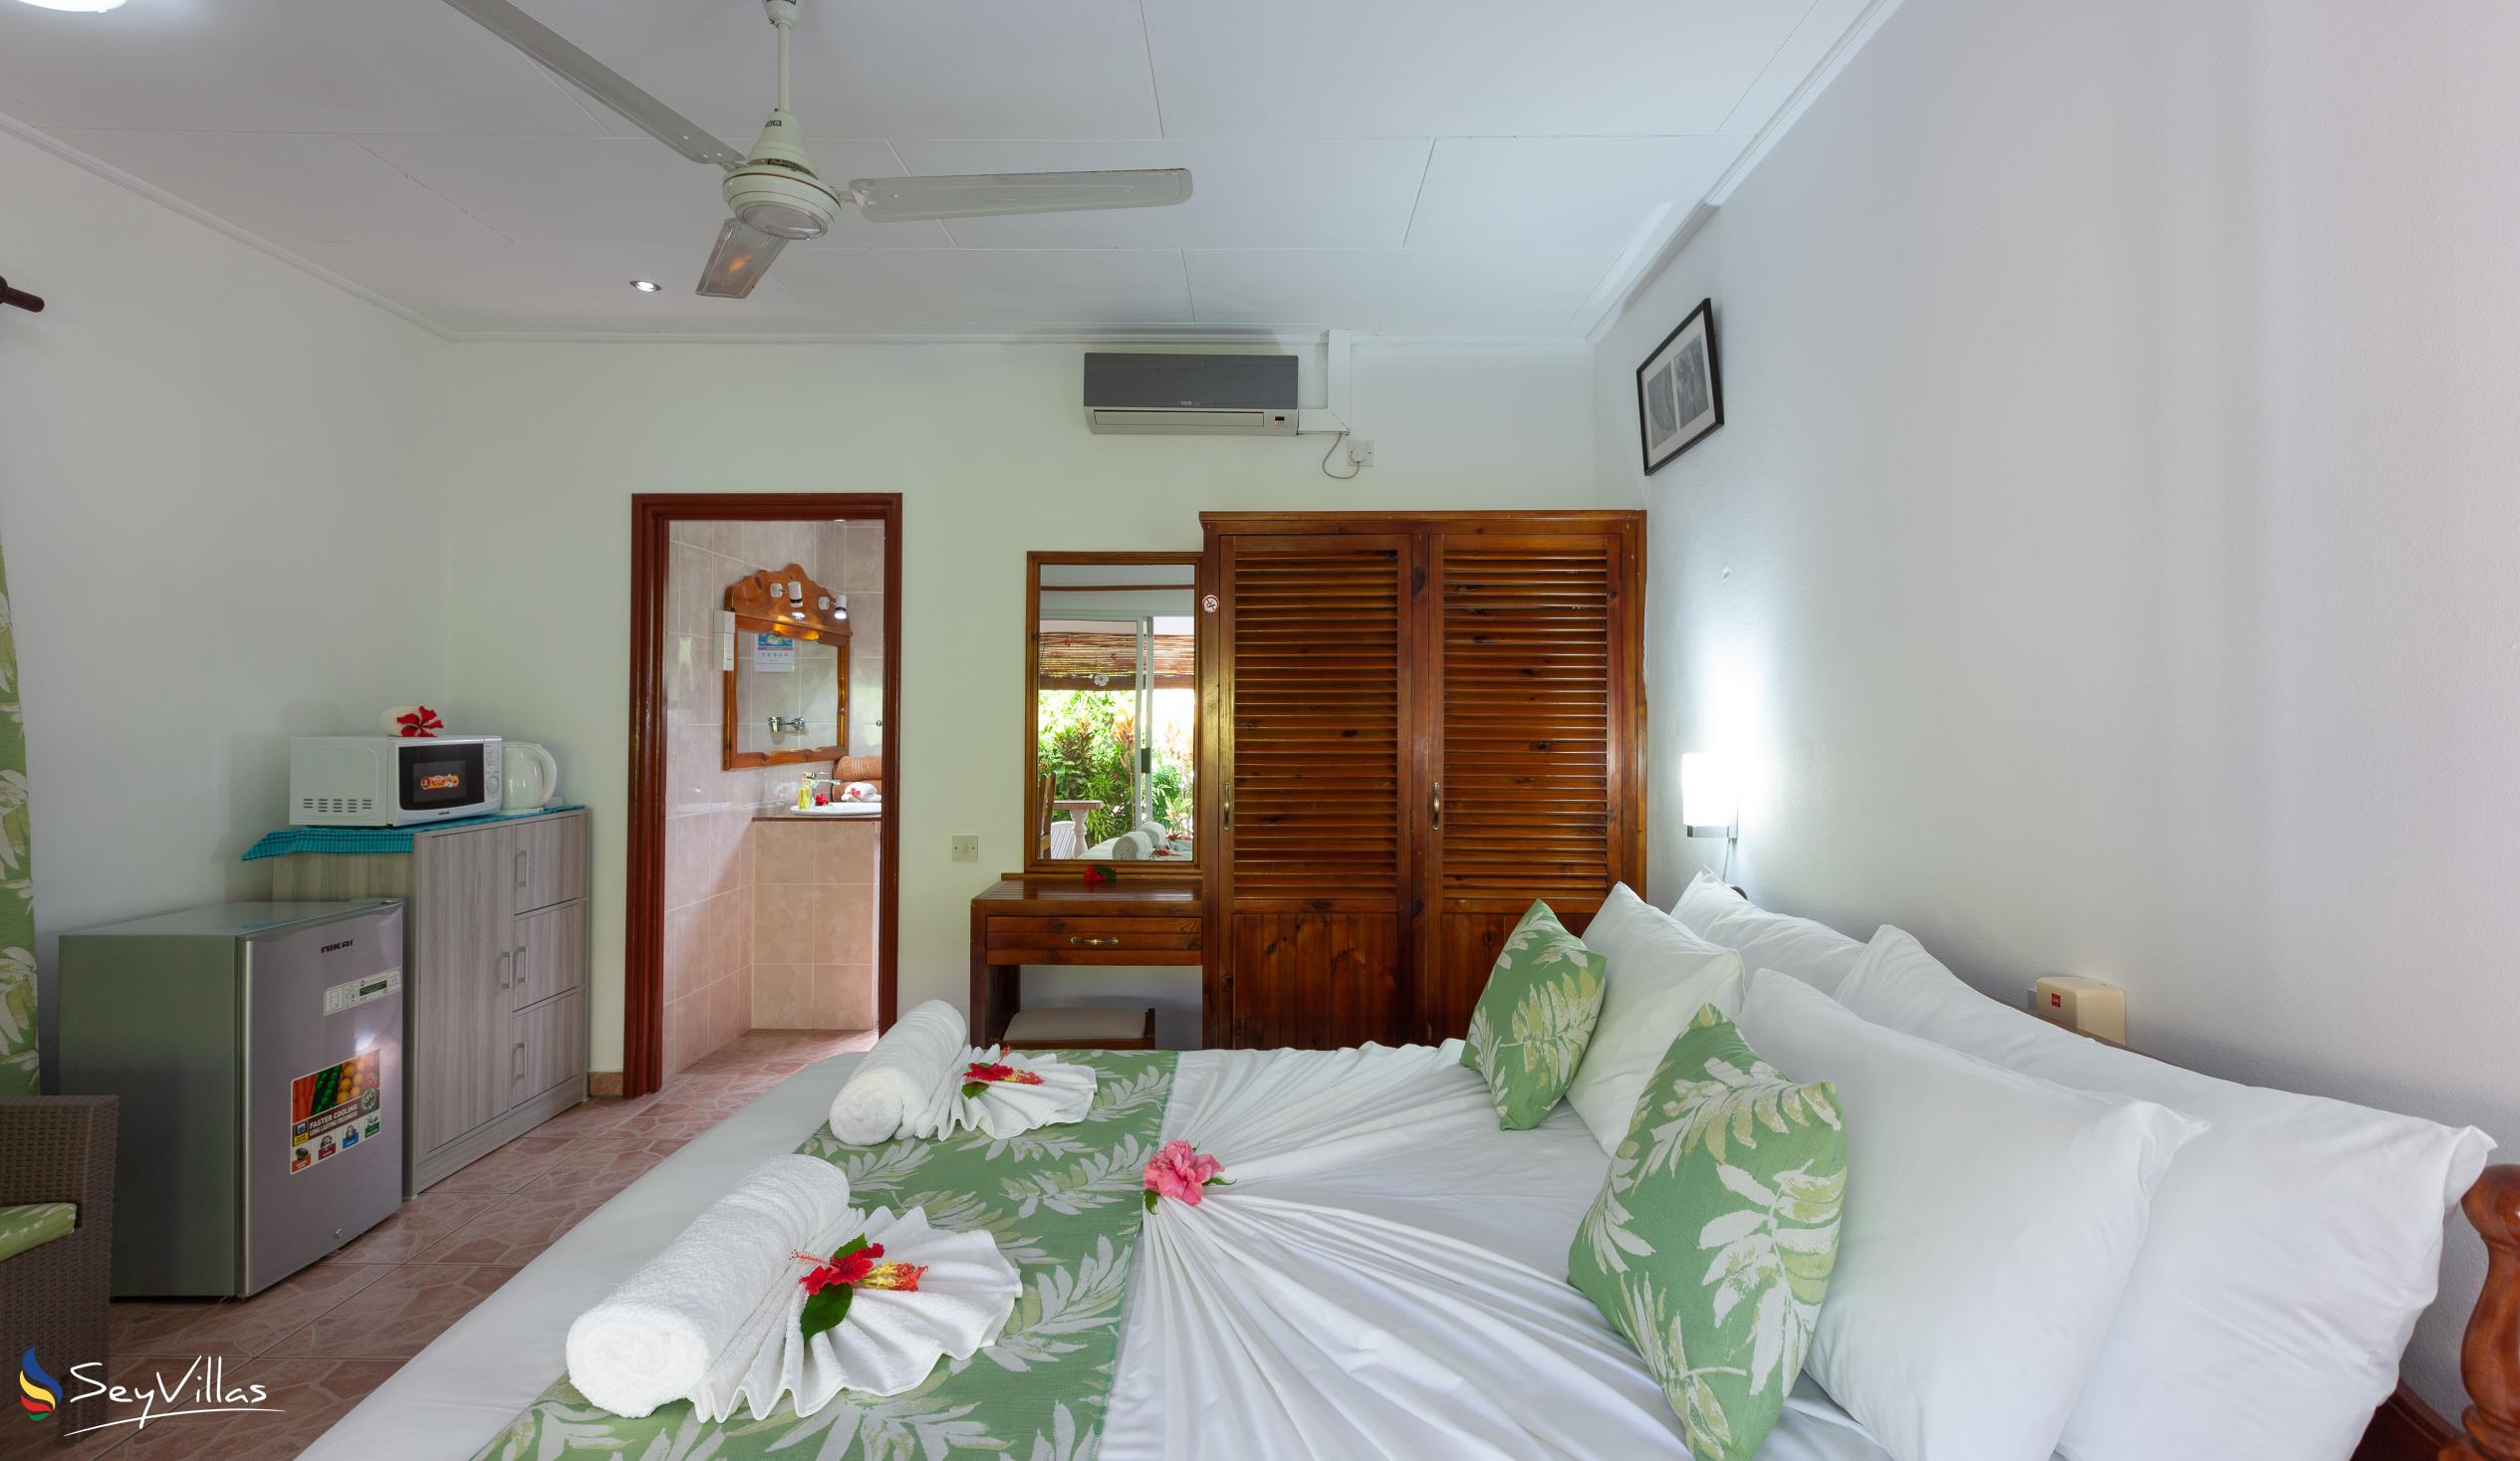 Photo 54: Pension Hibiscus - Maison Eliza - Standard Room - La Digue (Seychelles)